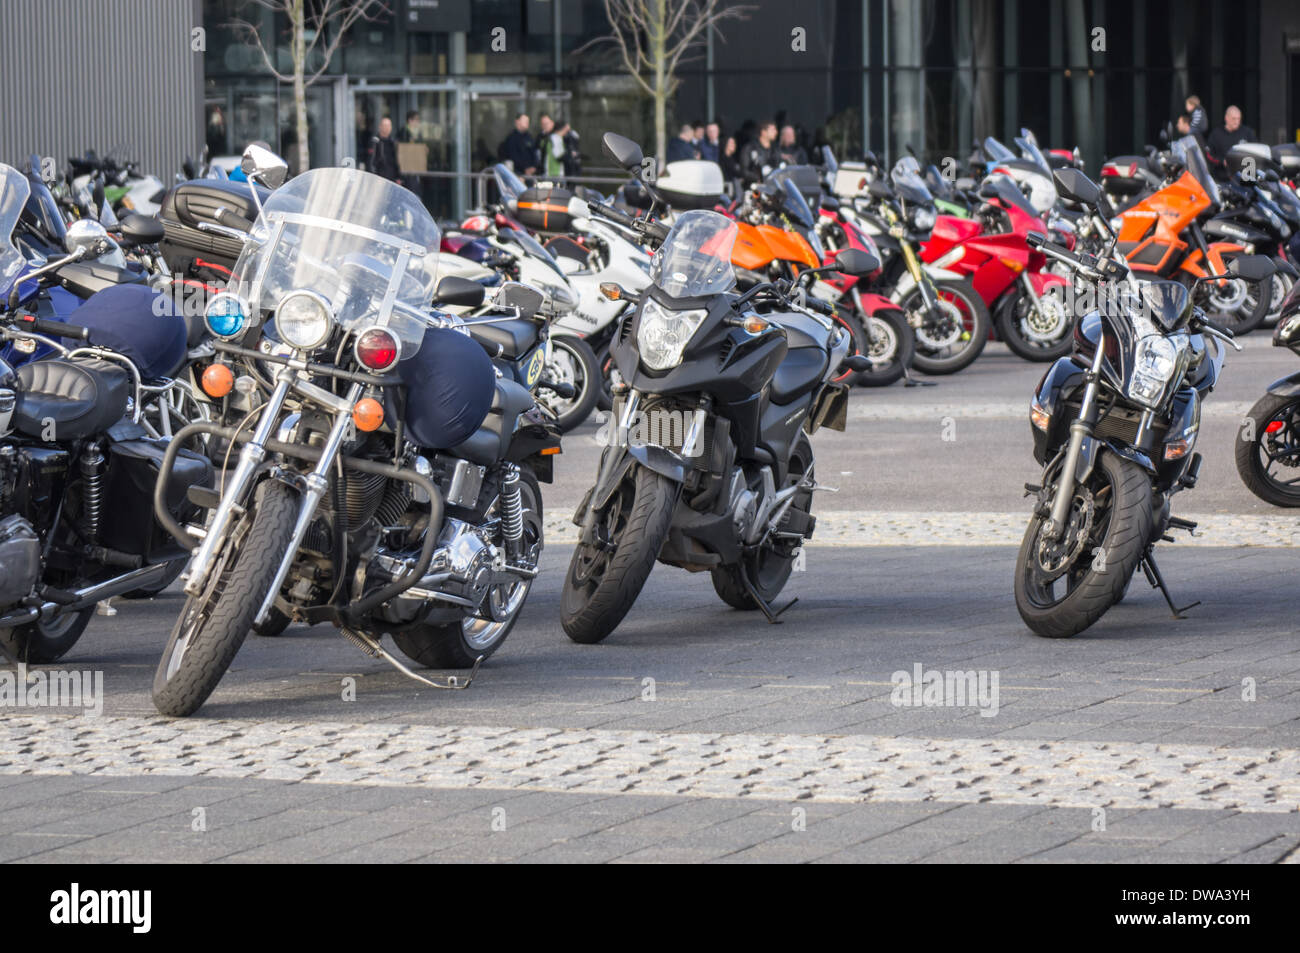 Motociclette parcheggiate, Londra Inghilterra Regno Unito Foto Stock